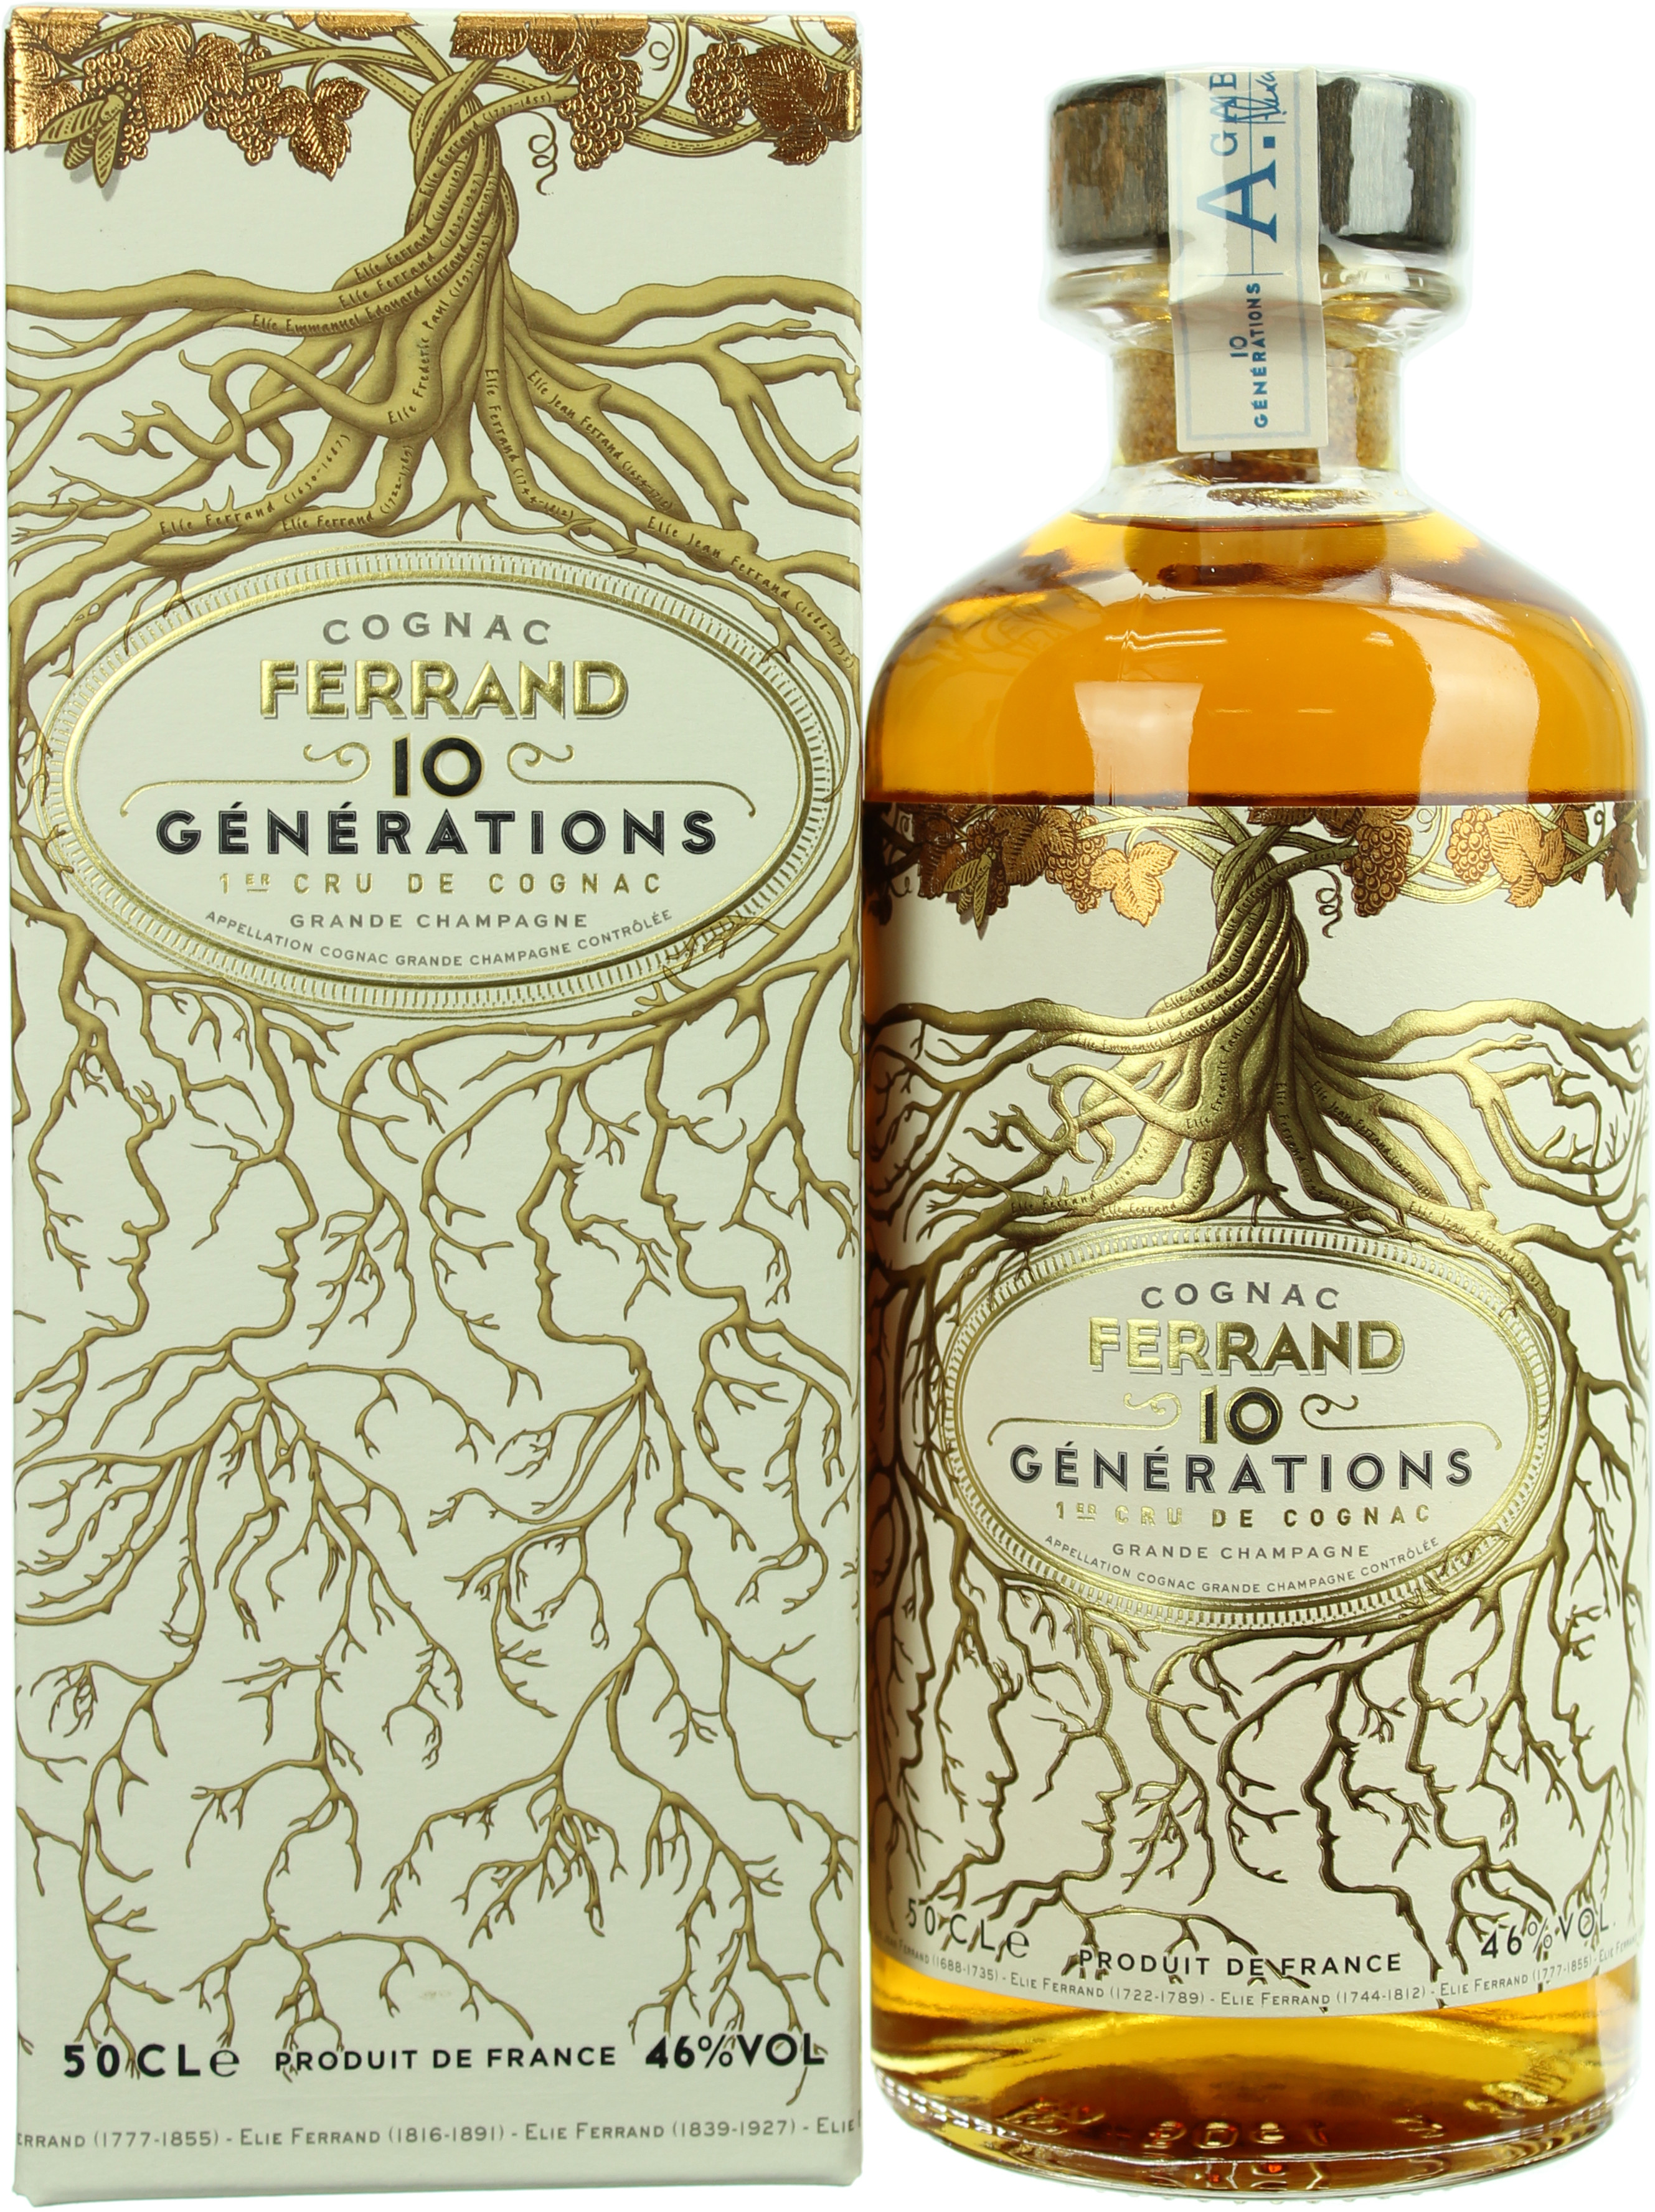 Pierre Ferrand Cognac 10 Generations 1er Cru Grande Champagne 46.0% 0,5l